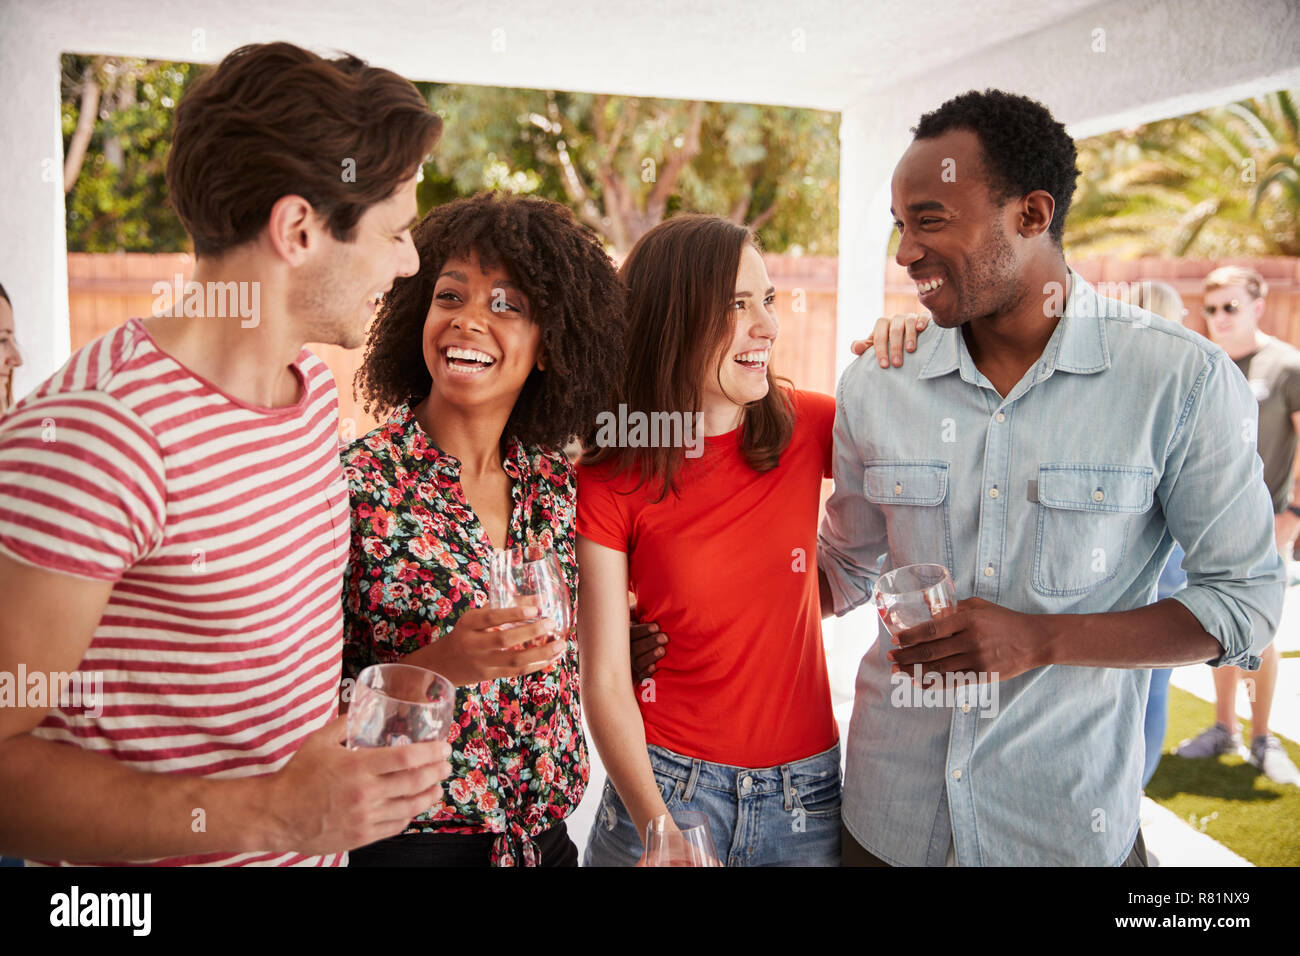 Junge Erwachsene Freunde sprechen in einem Hinterhof Partei Stockfoto